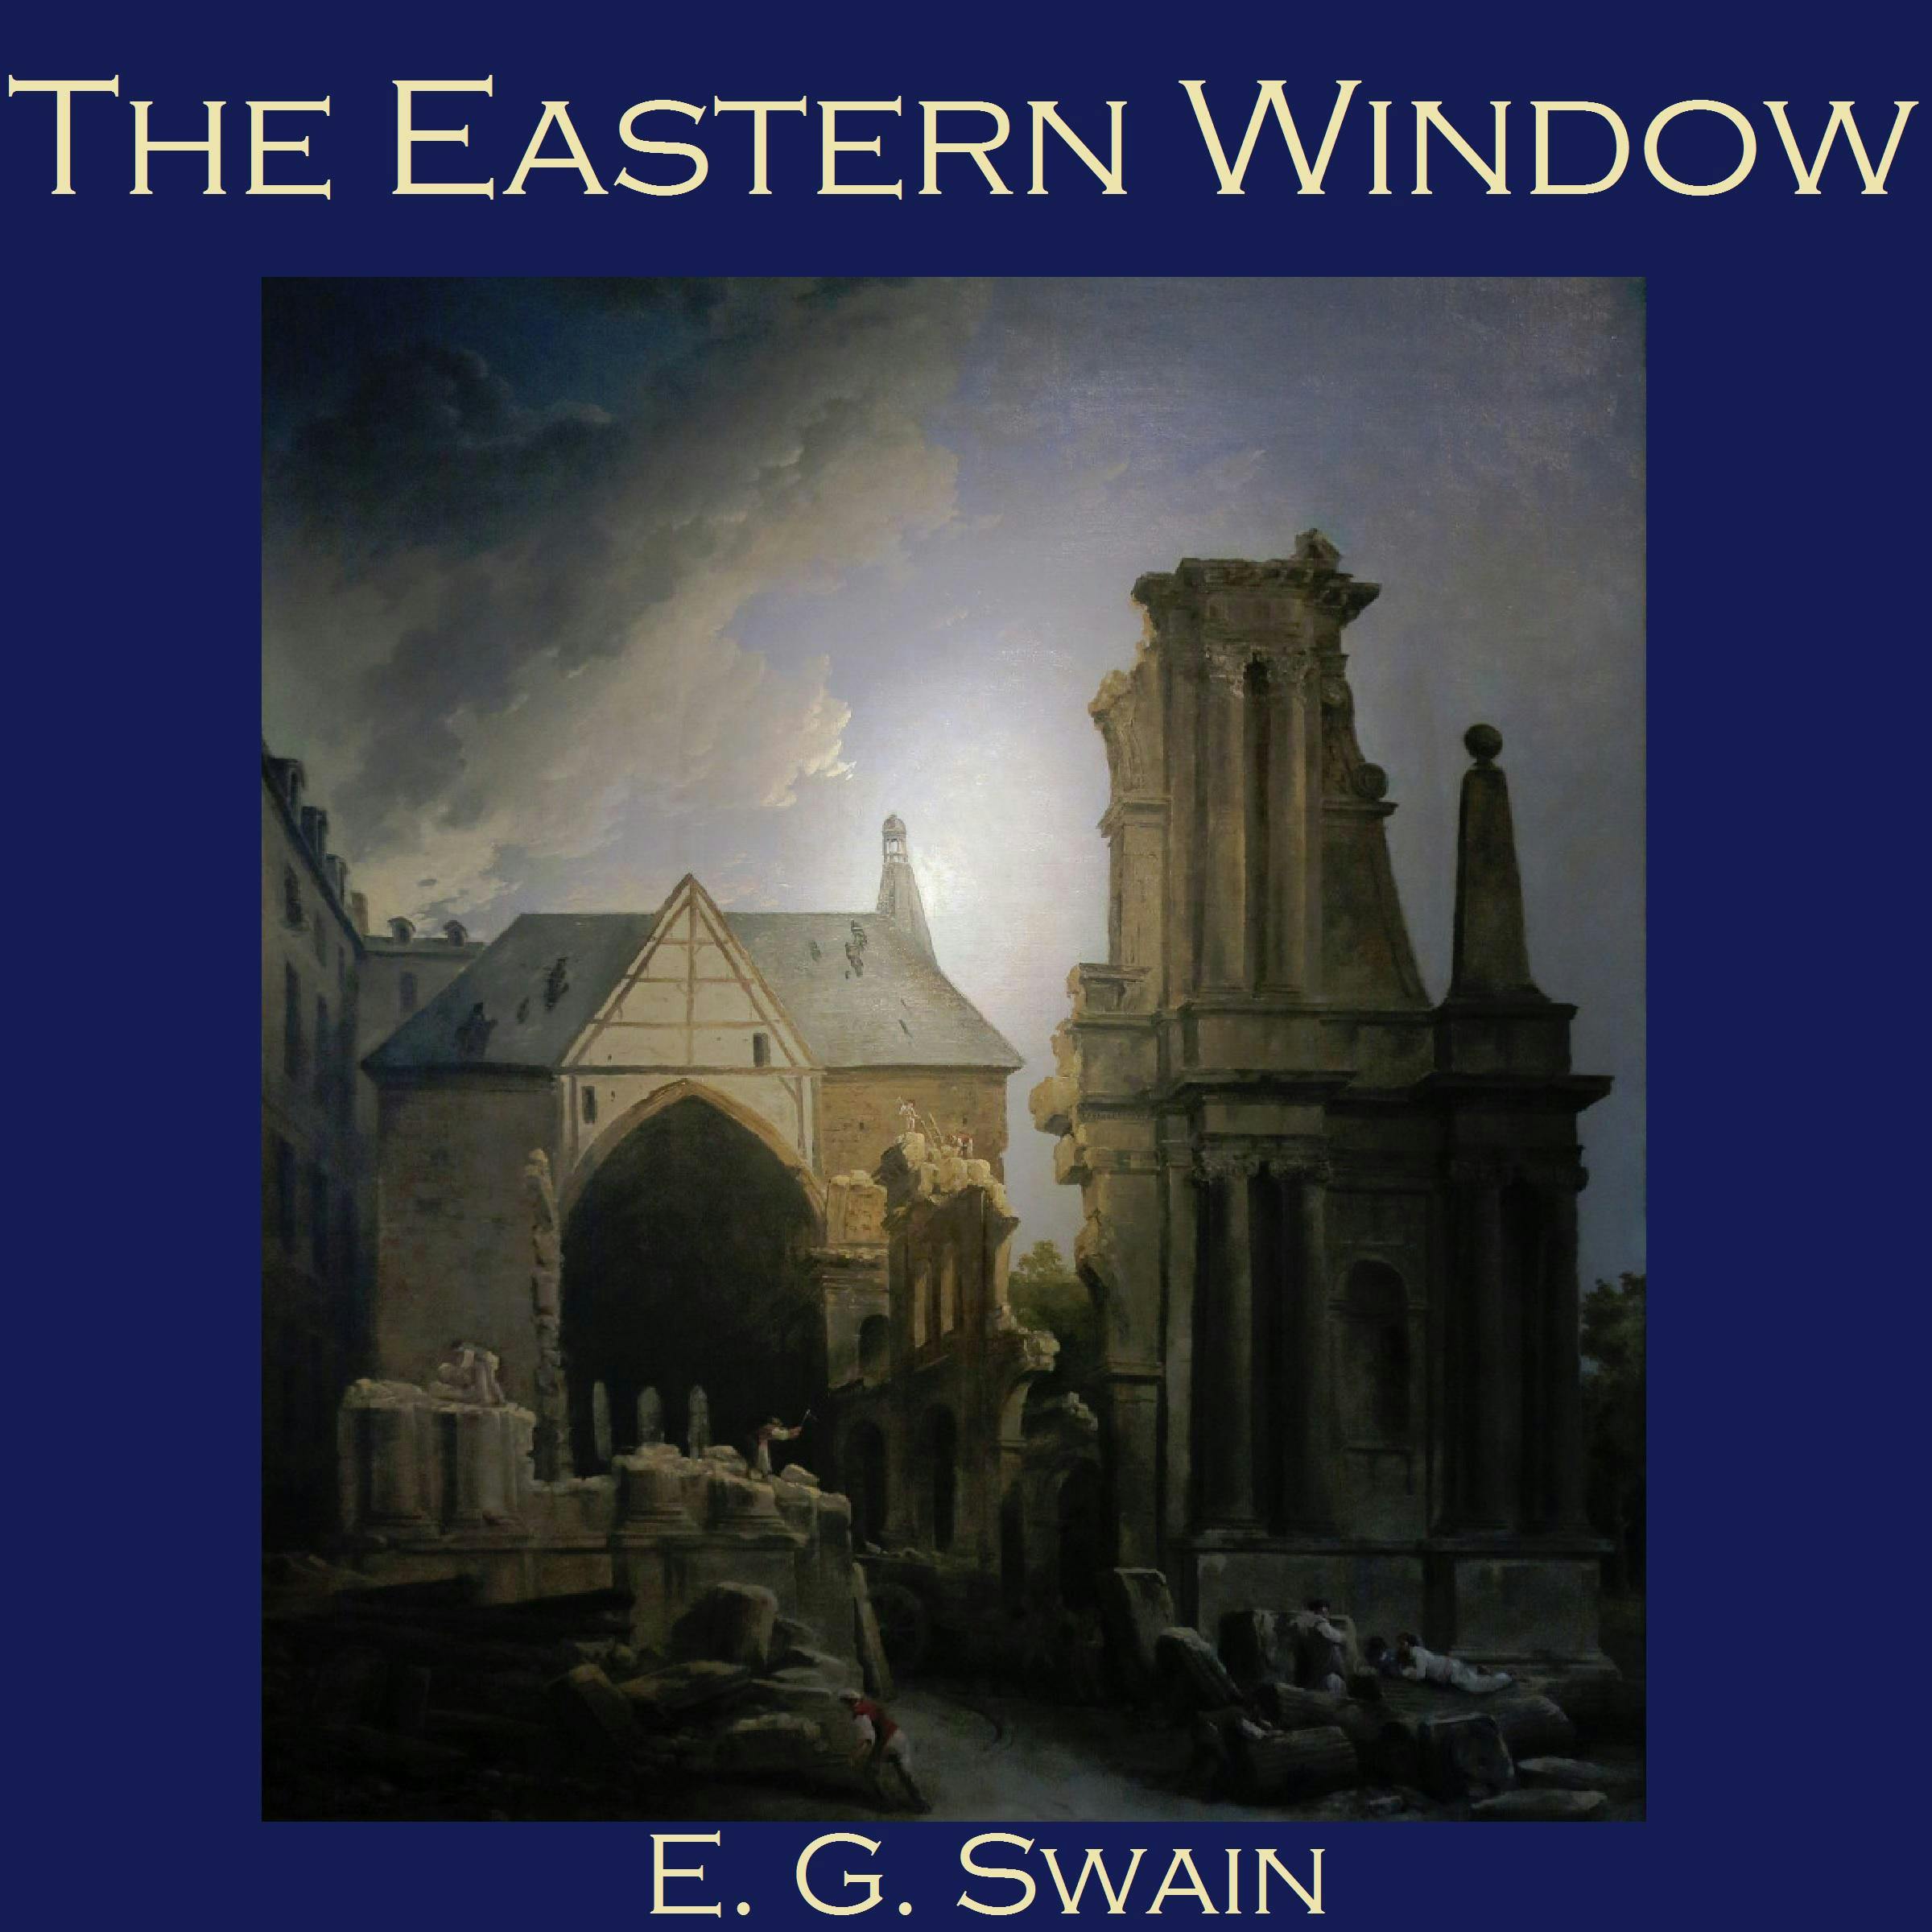 The Eastern Window - E. G. Swain